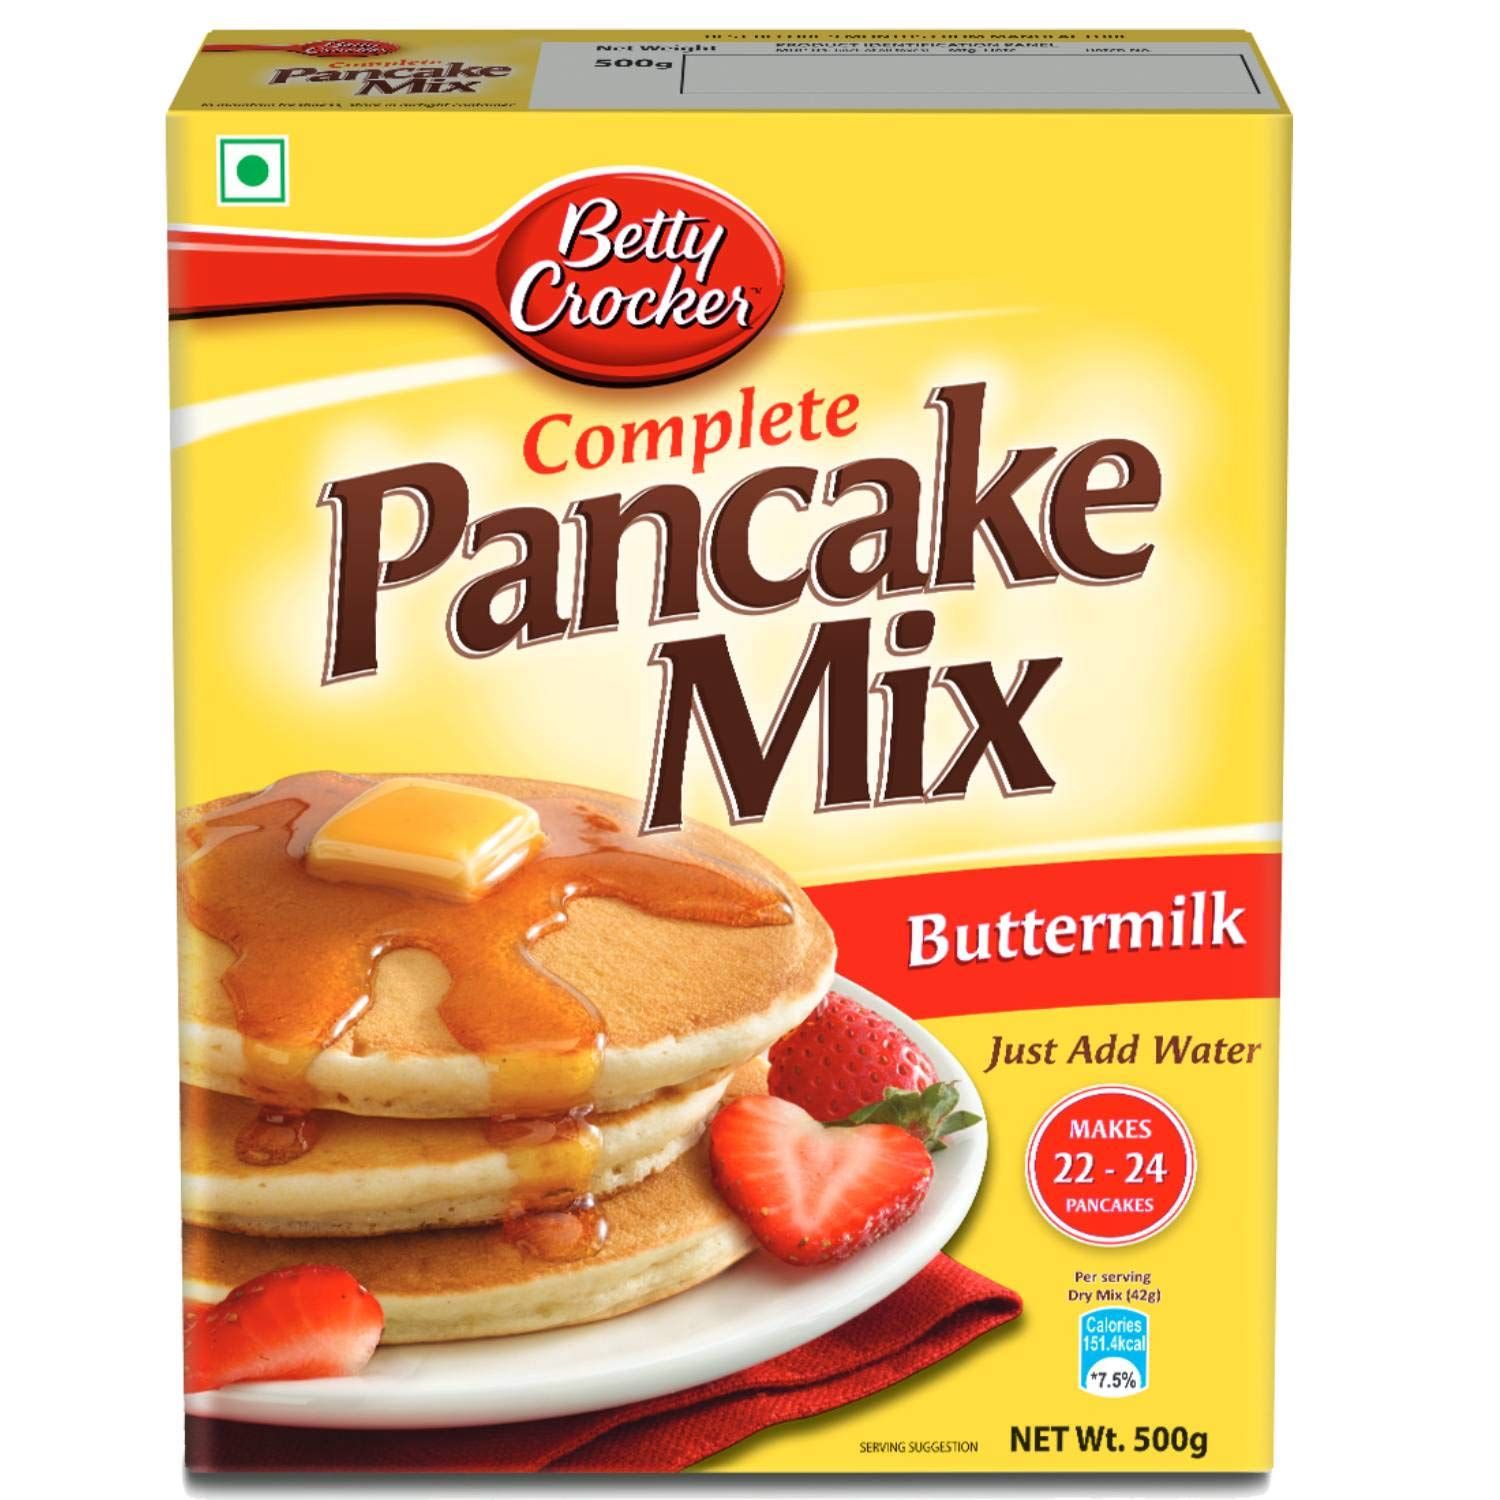 Betty Crocker Pancake Mix Image